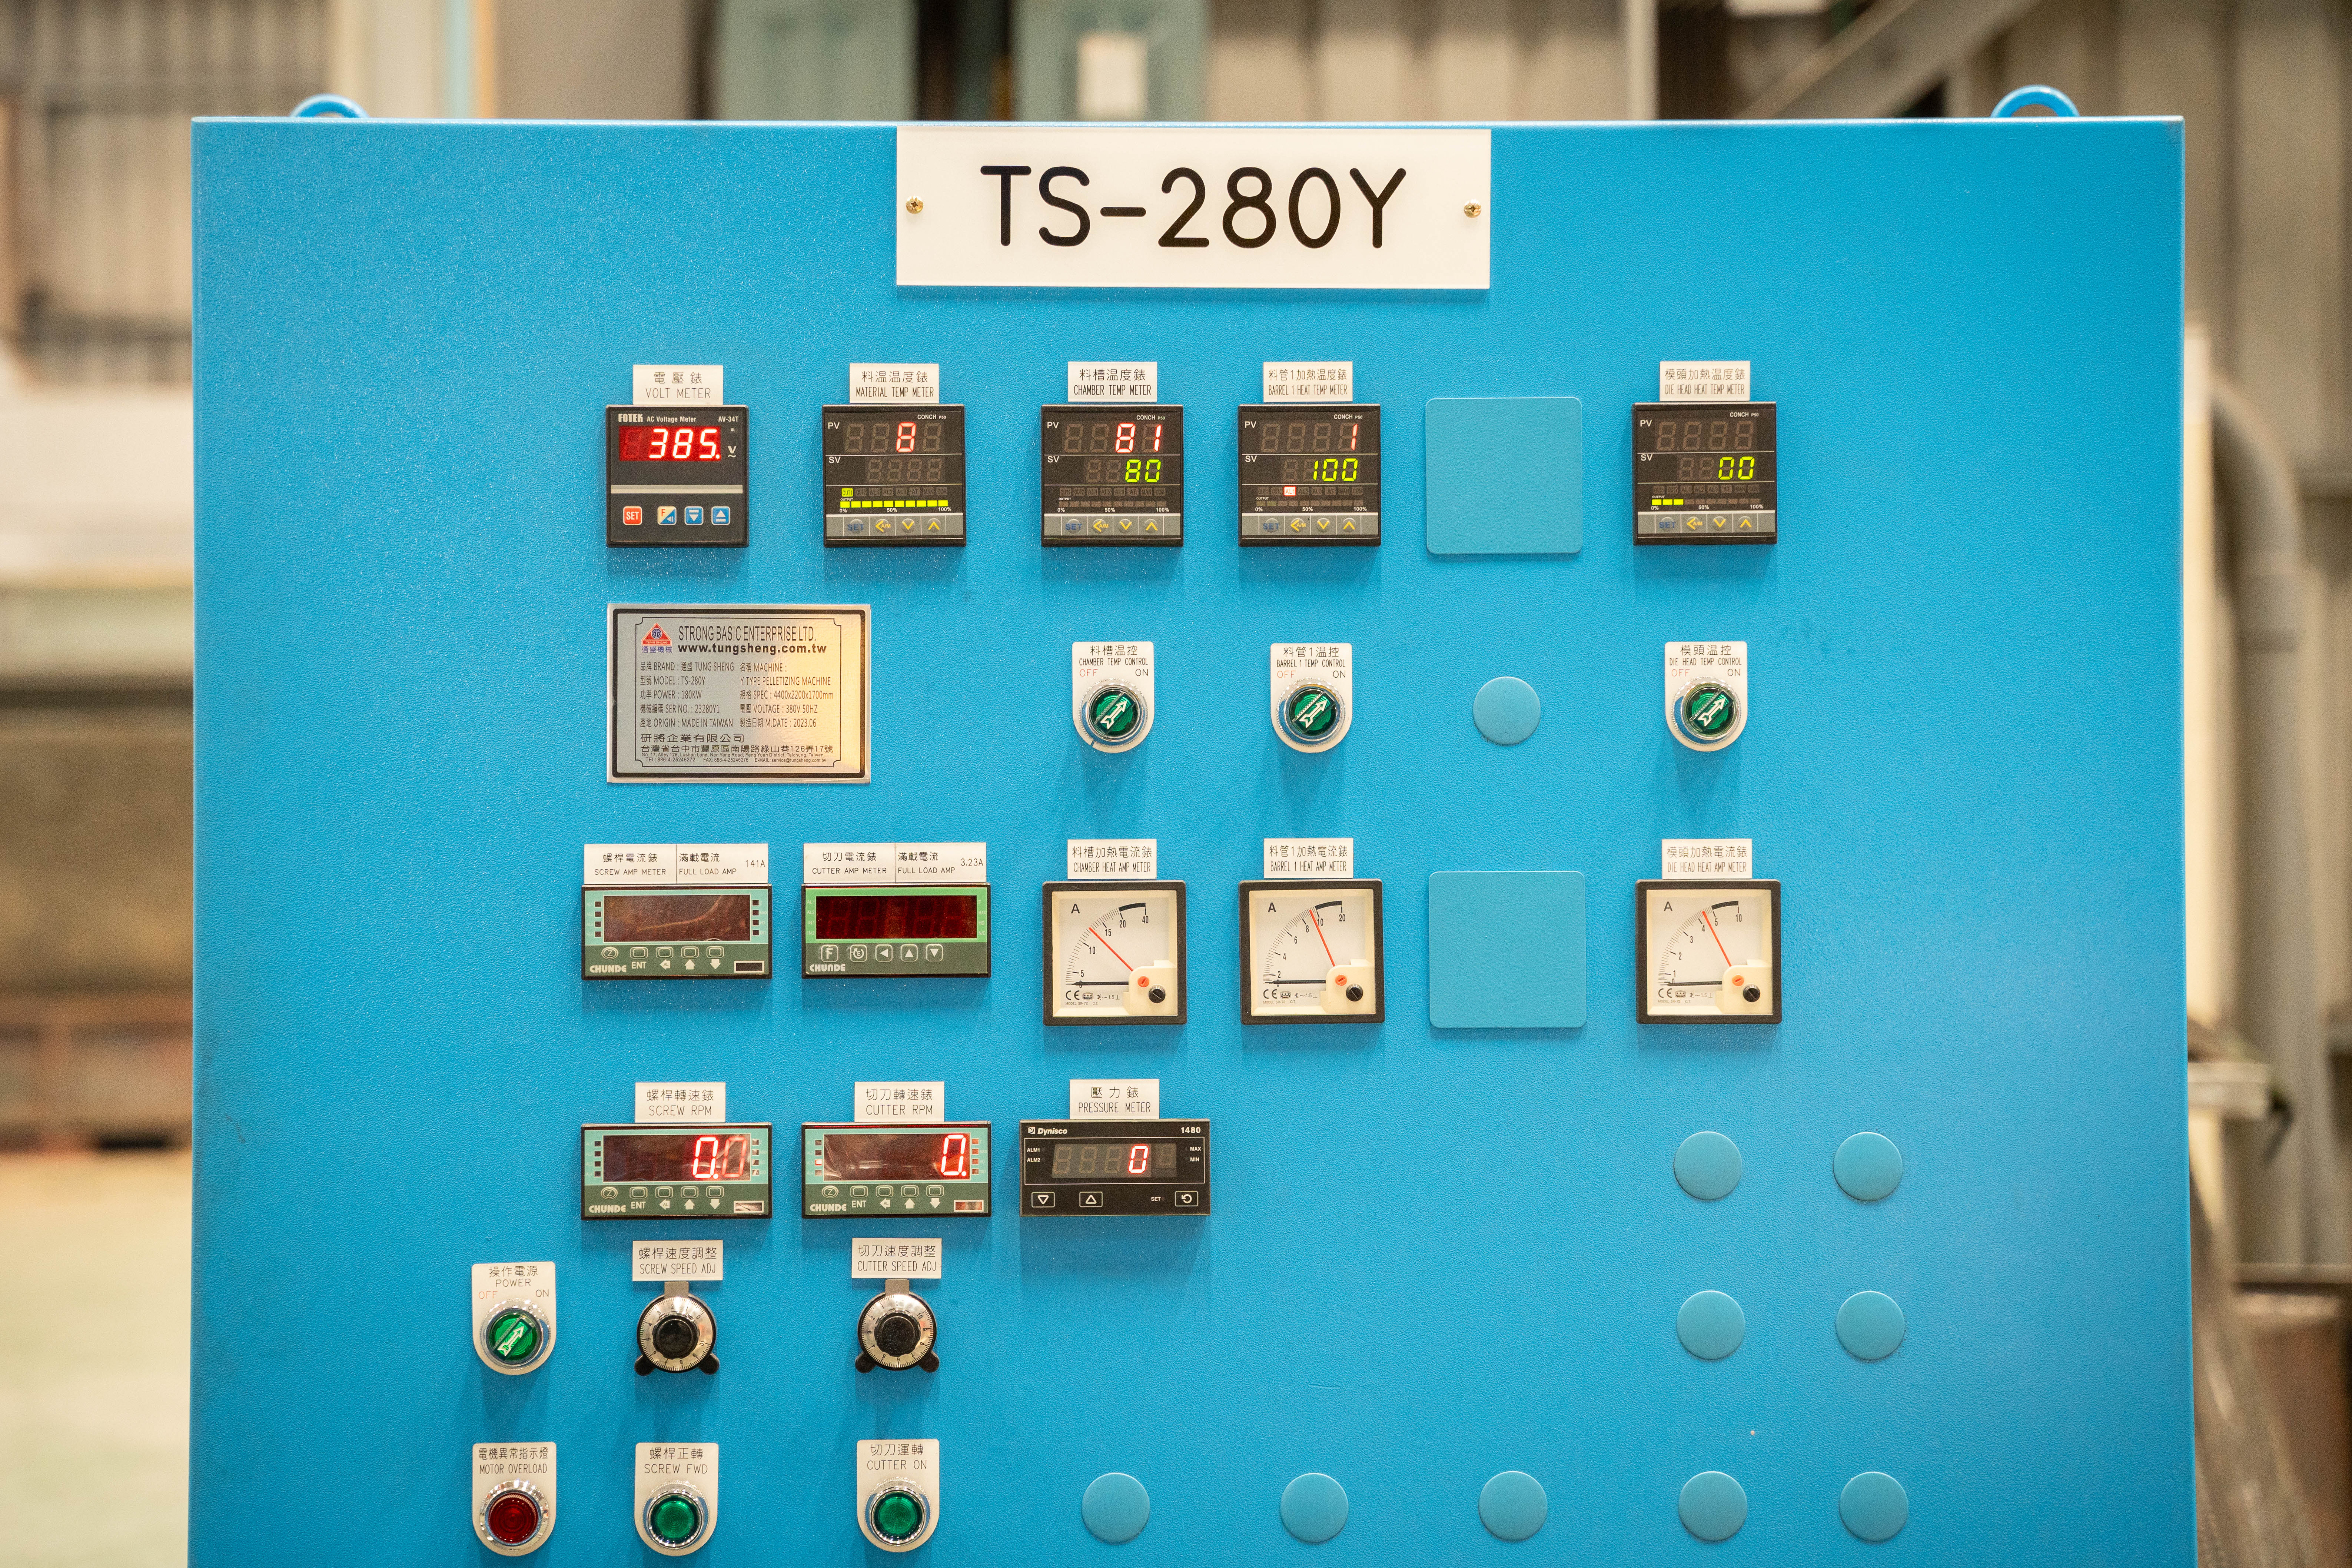 TS-280Y لوحة التحكم في الطاقة